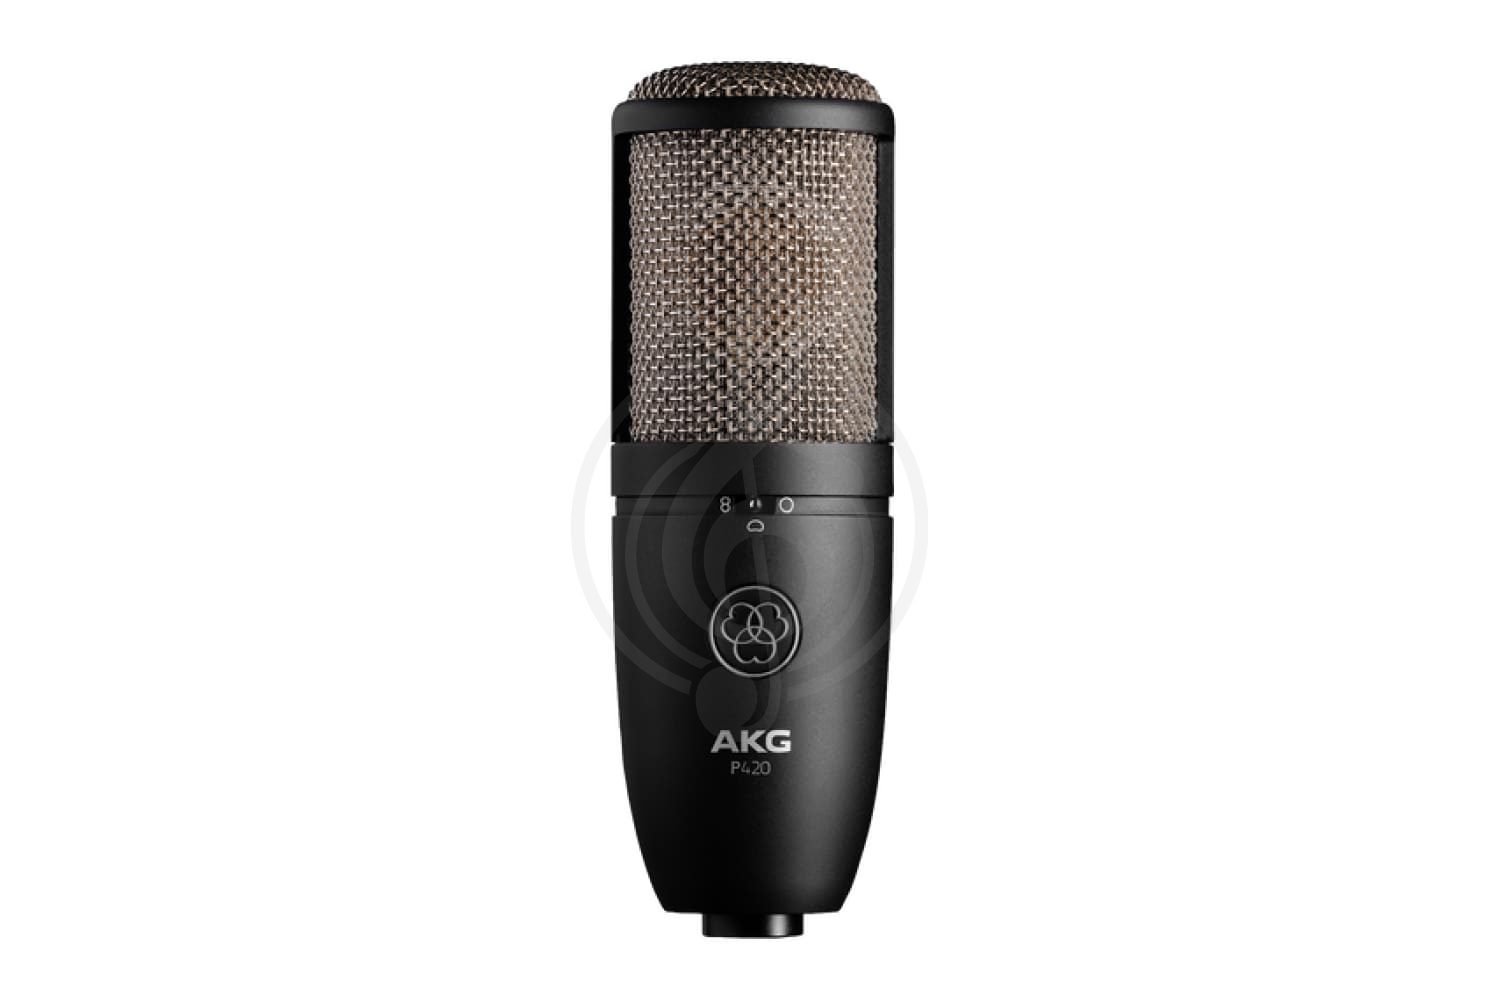 Конденсаторный вокальный микрофон Конденсаторные вокальные микрофоны AKG AKG P420 - Конденсаторный микрофон P420 - фото 1